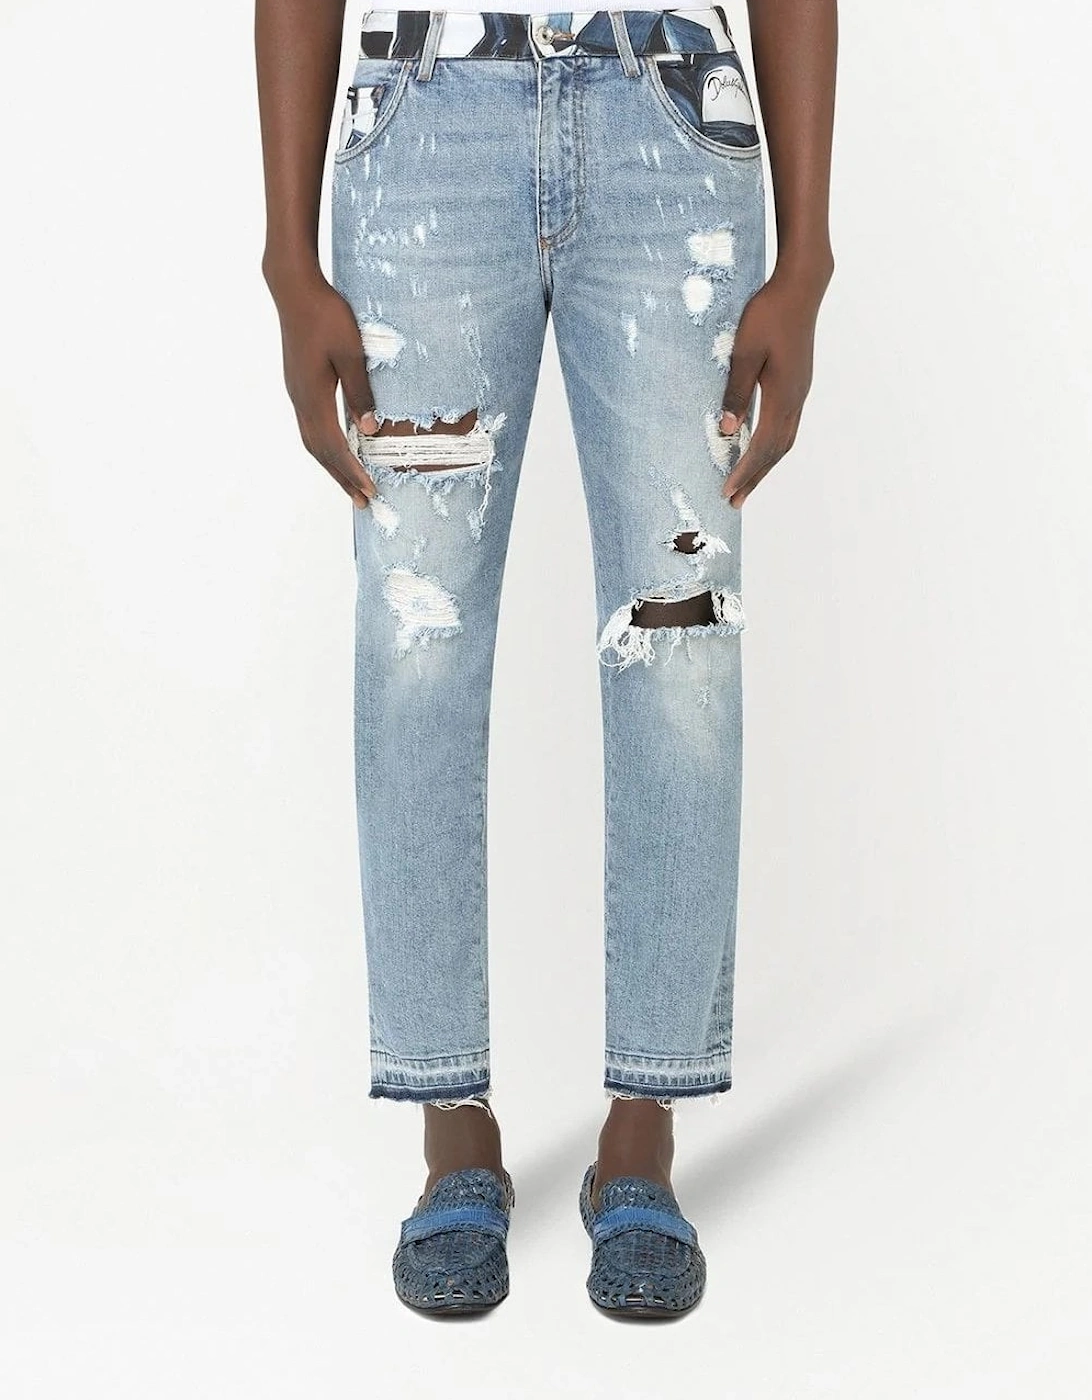 Vintaged Jeans